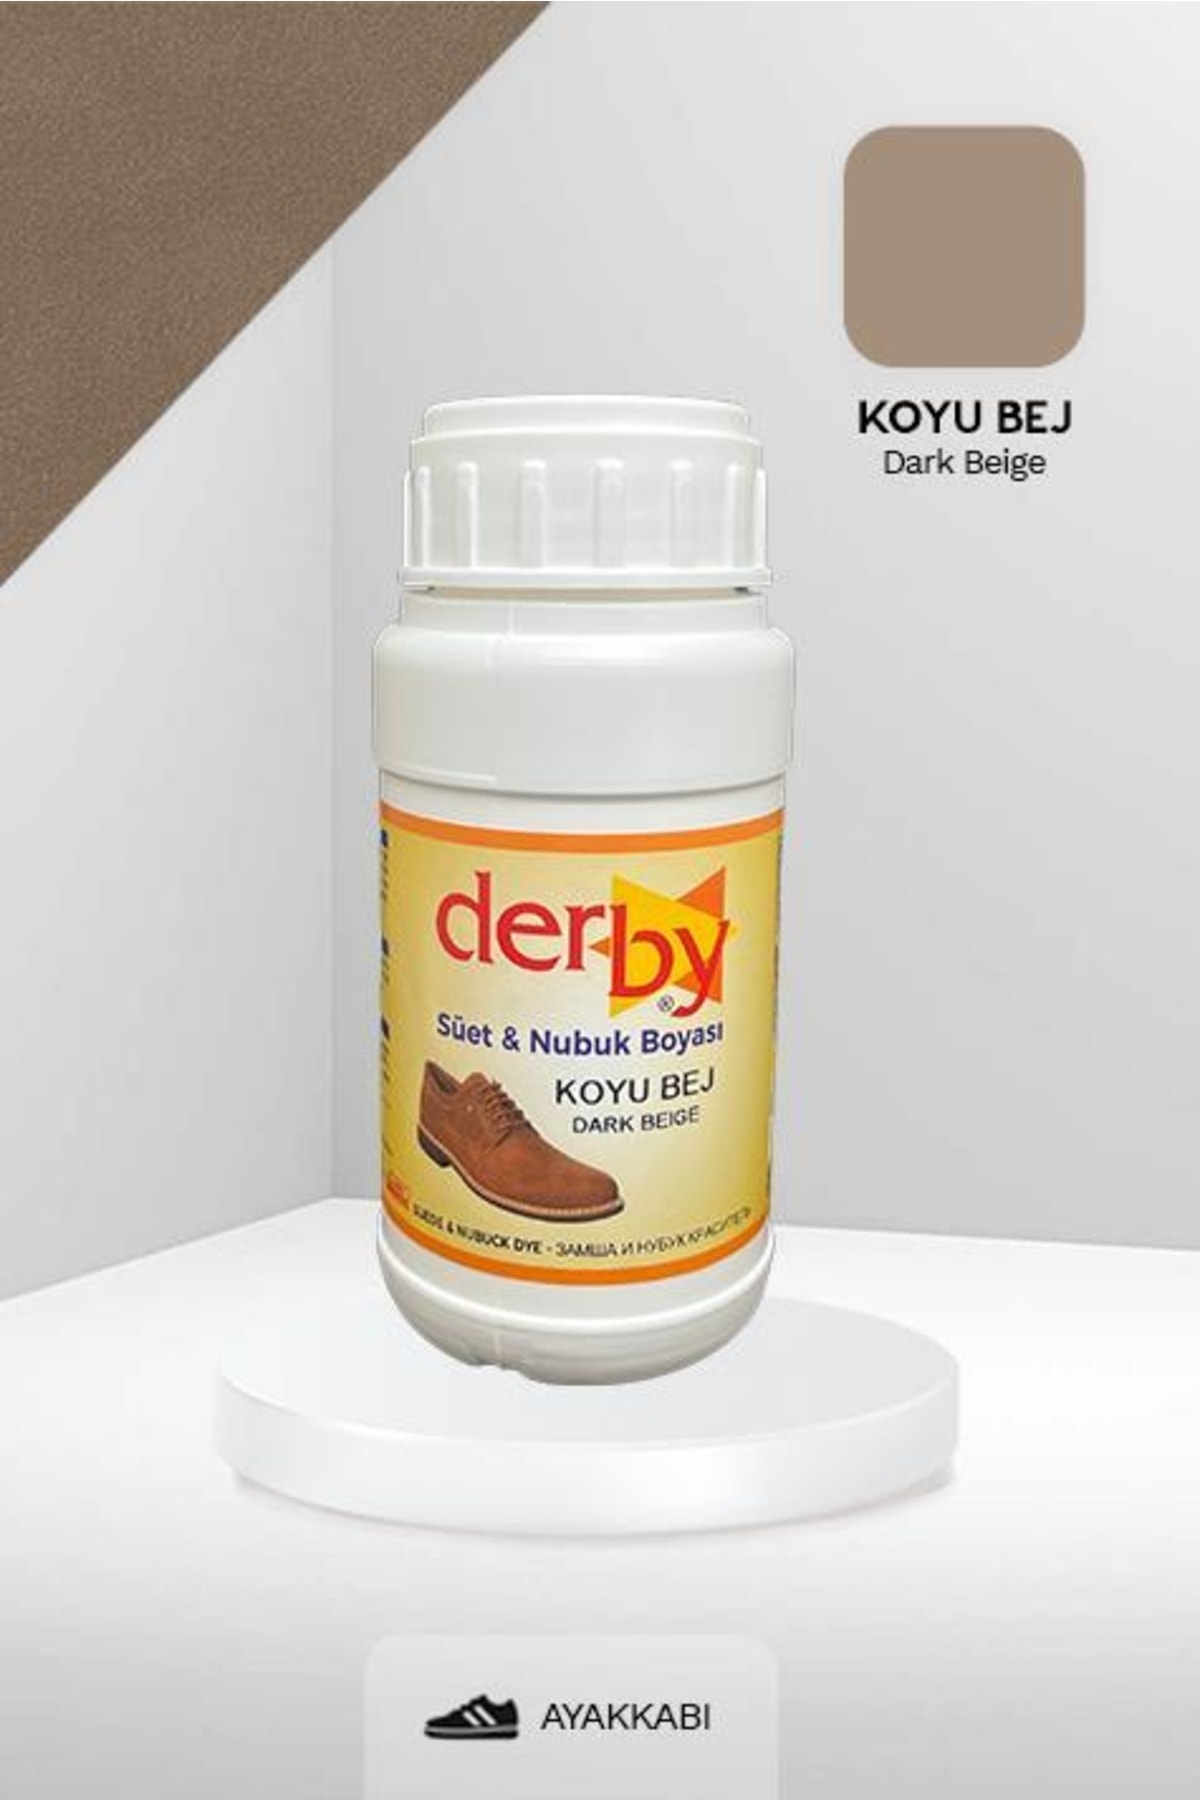 Derby Koyu Bej Süet & Nubuk Deri Boyası 250 mL / Süet Nubuk Ayakkabı Boyası